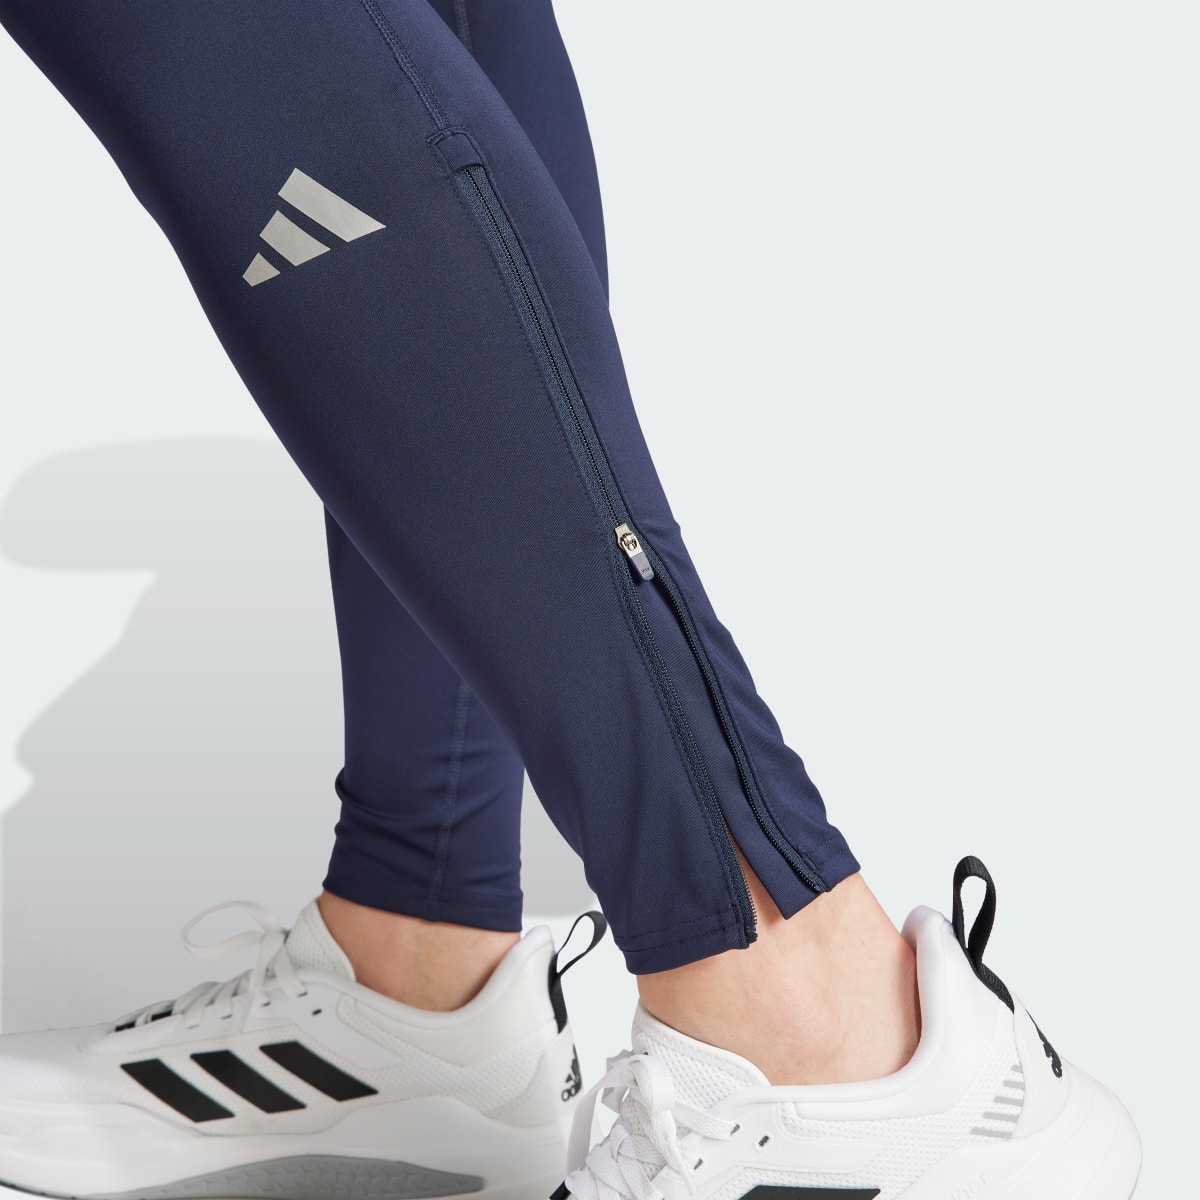 Adidas Own the Run Leggings. 5